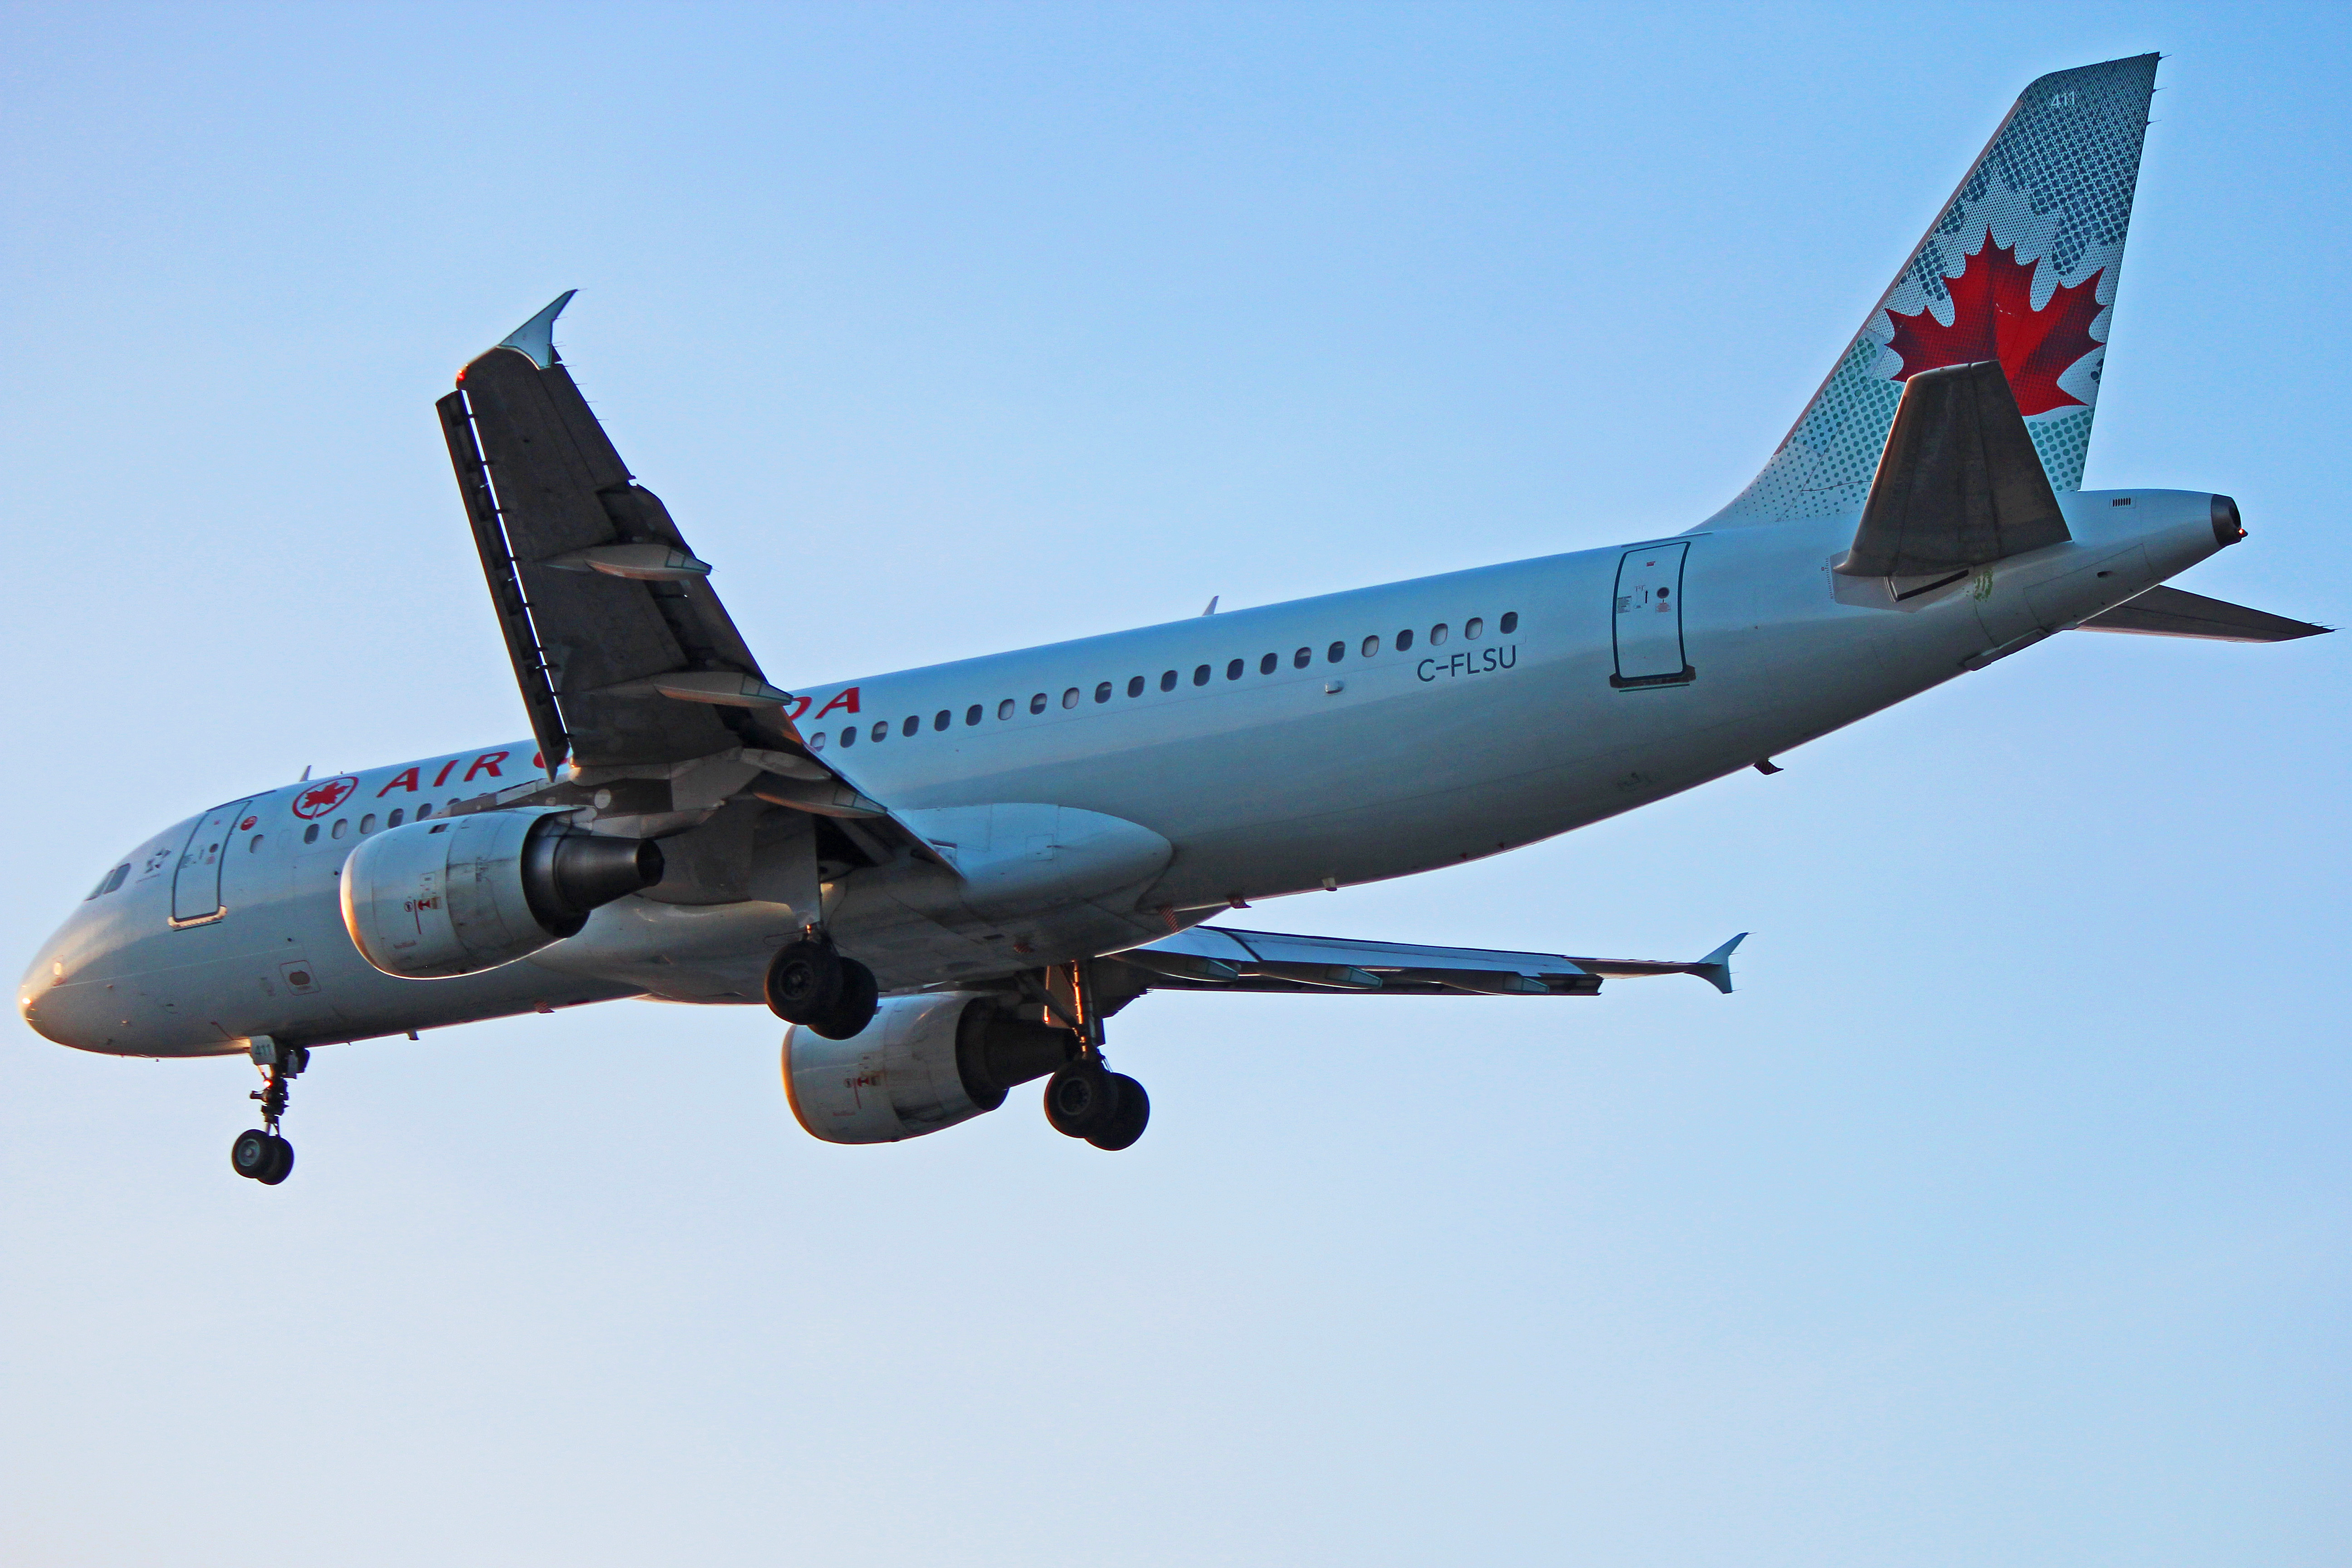 C Flsu Air Canada Airbus A320 200 At Toronto Pearson In December 2017